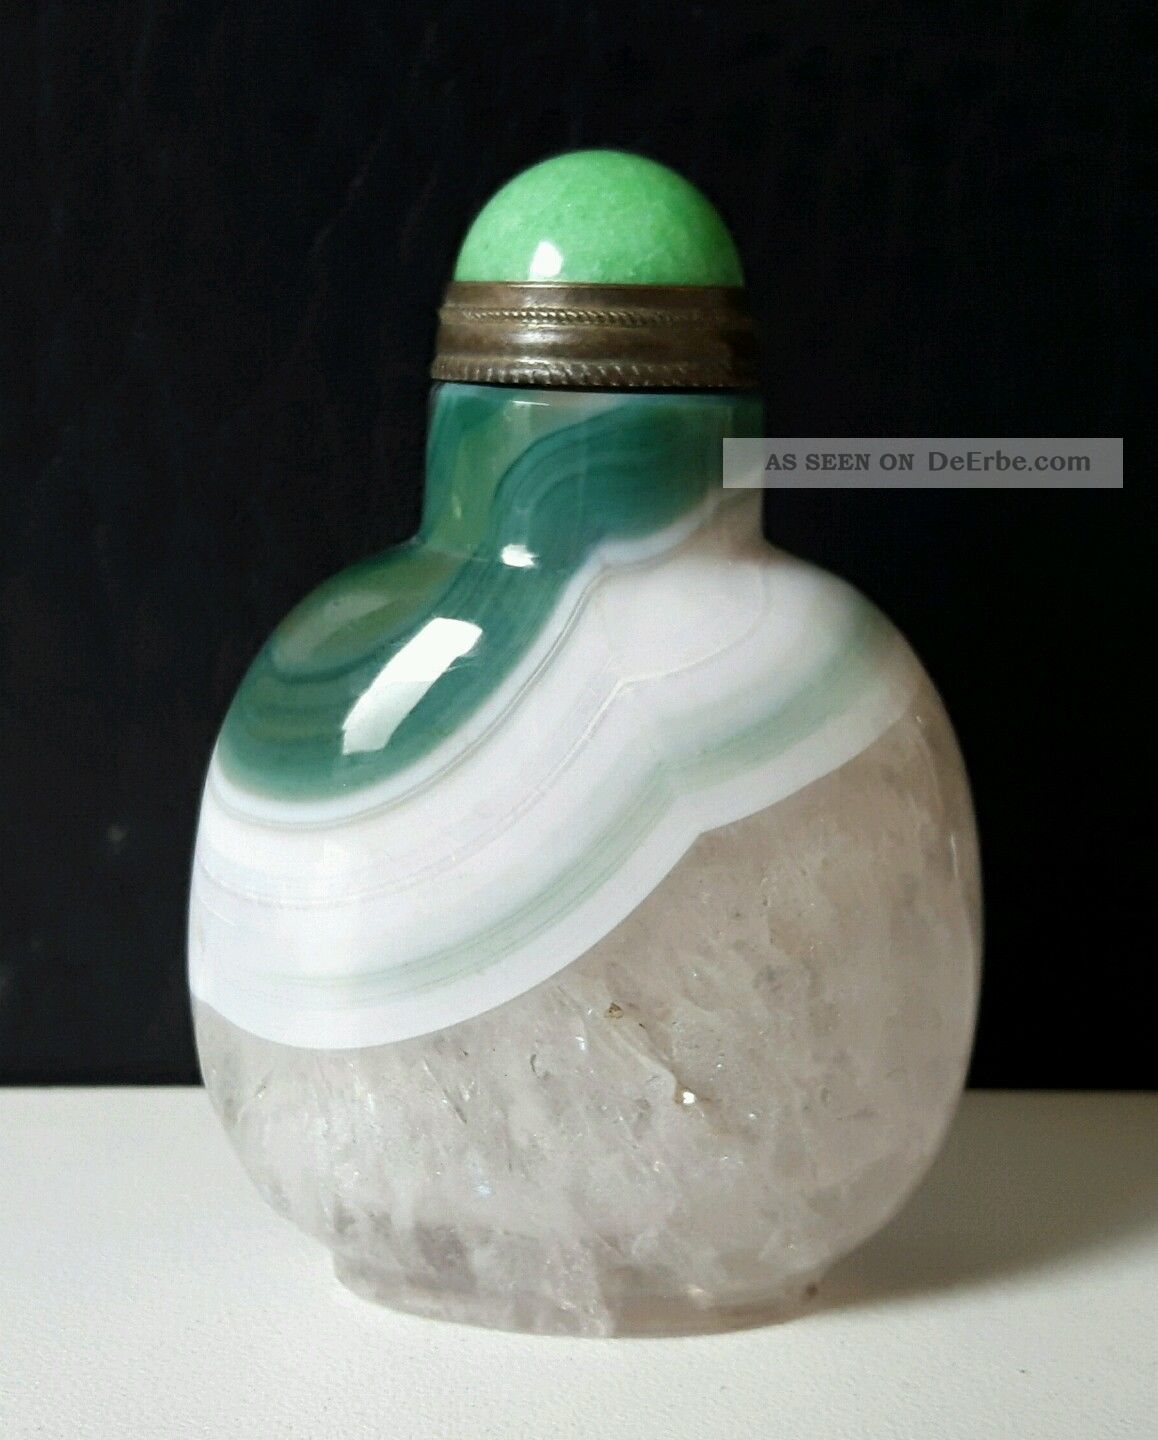 Chinesische Agate /achat Snuff Bottle (kombiversand) Entstehungszeit nach 1945 Bild